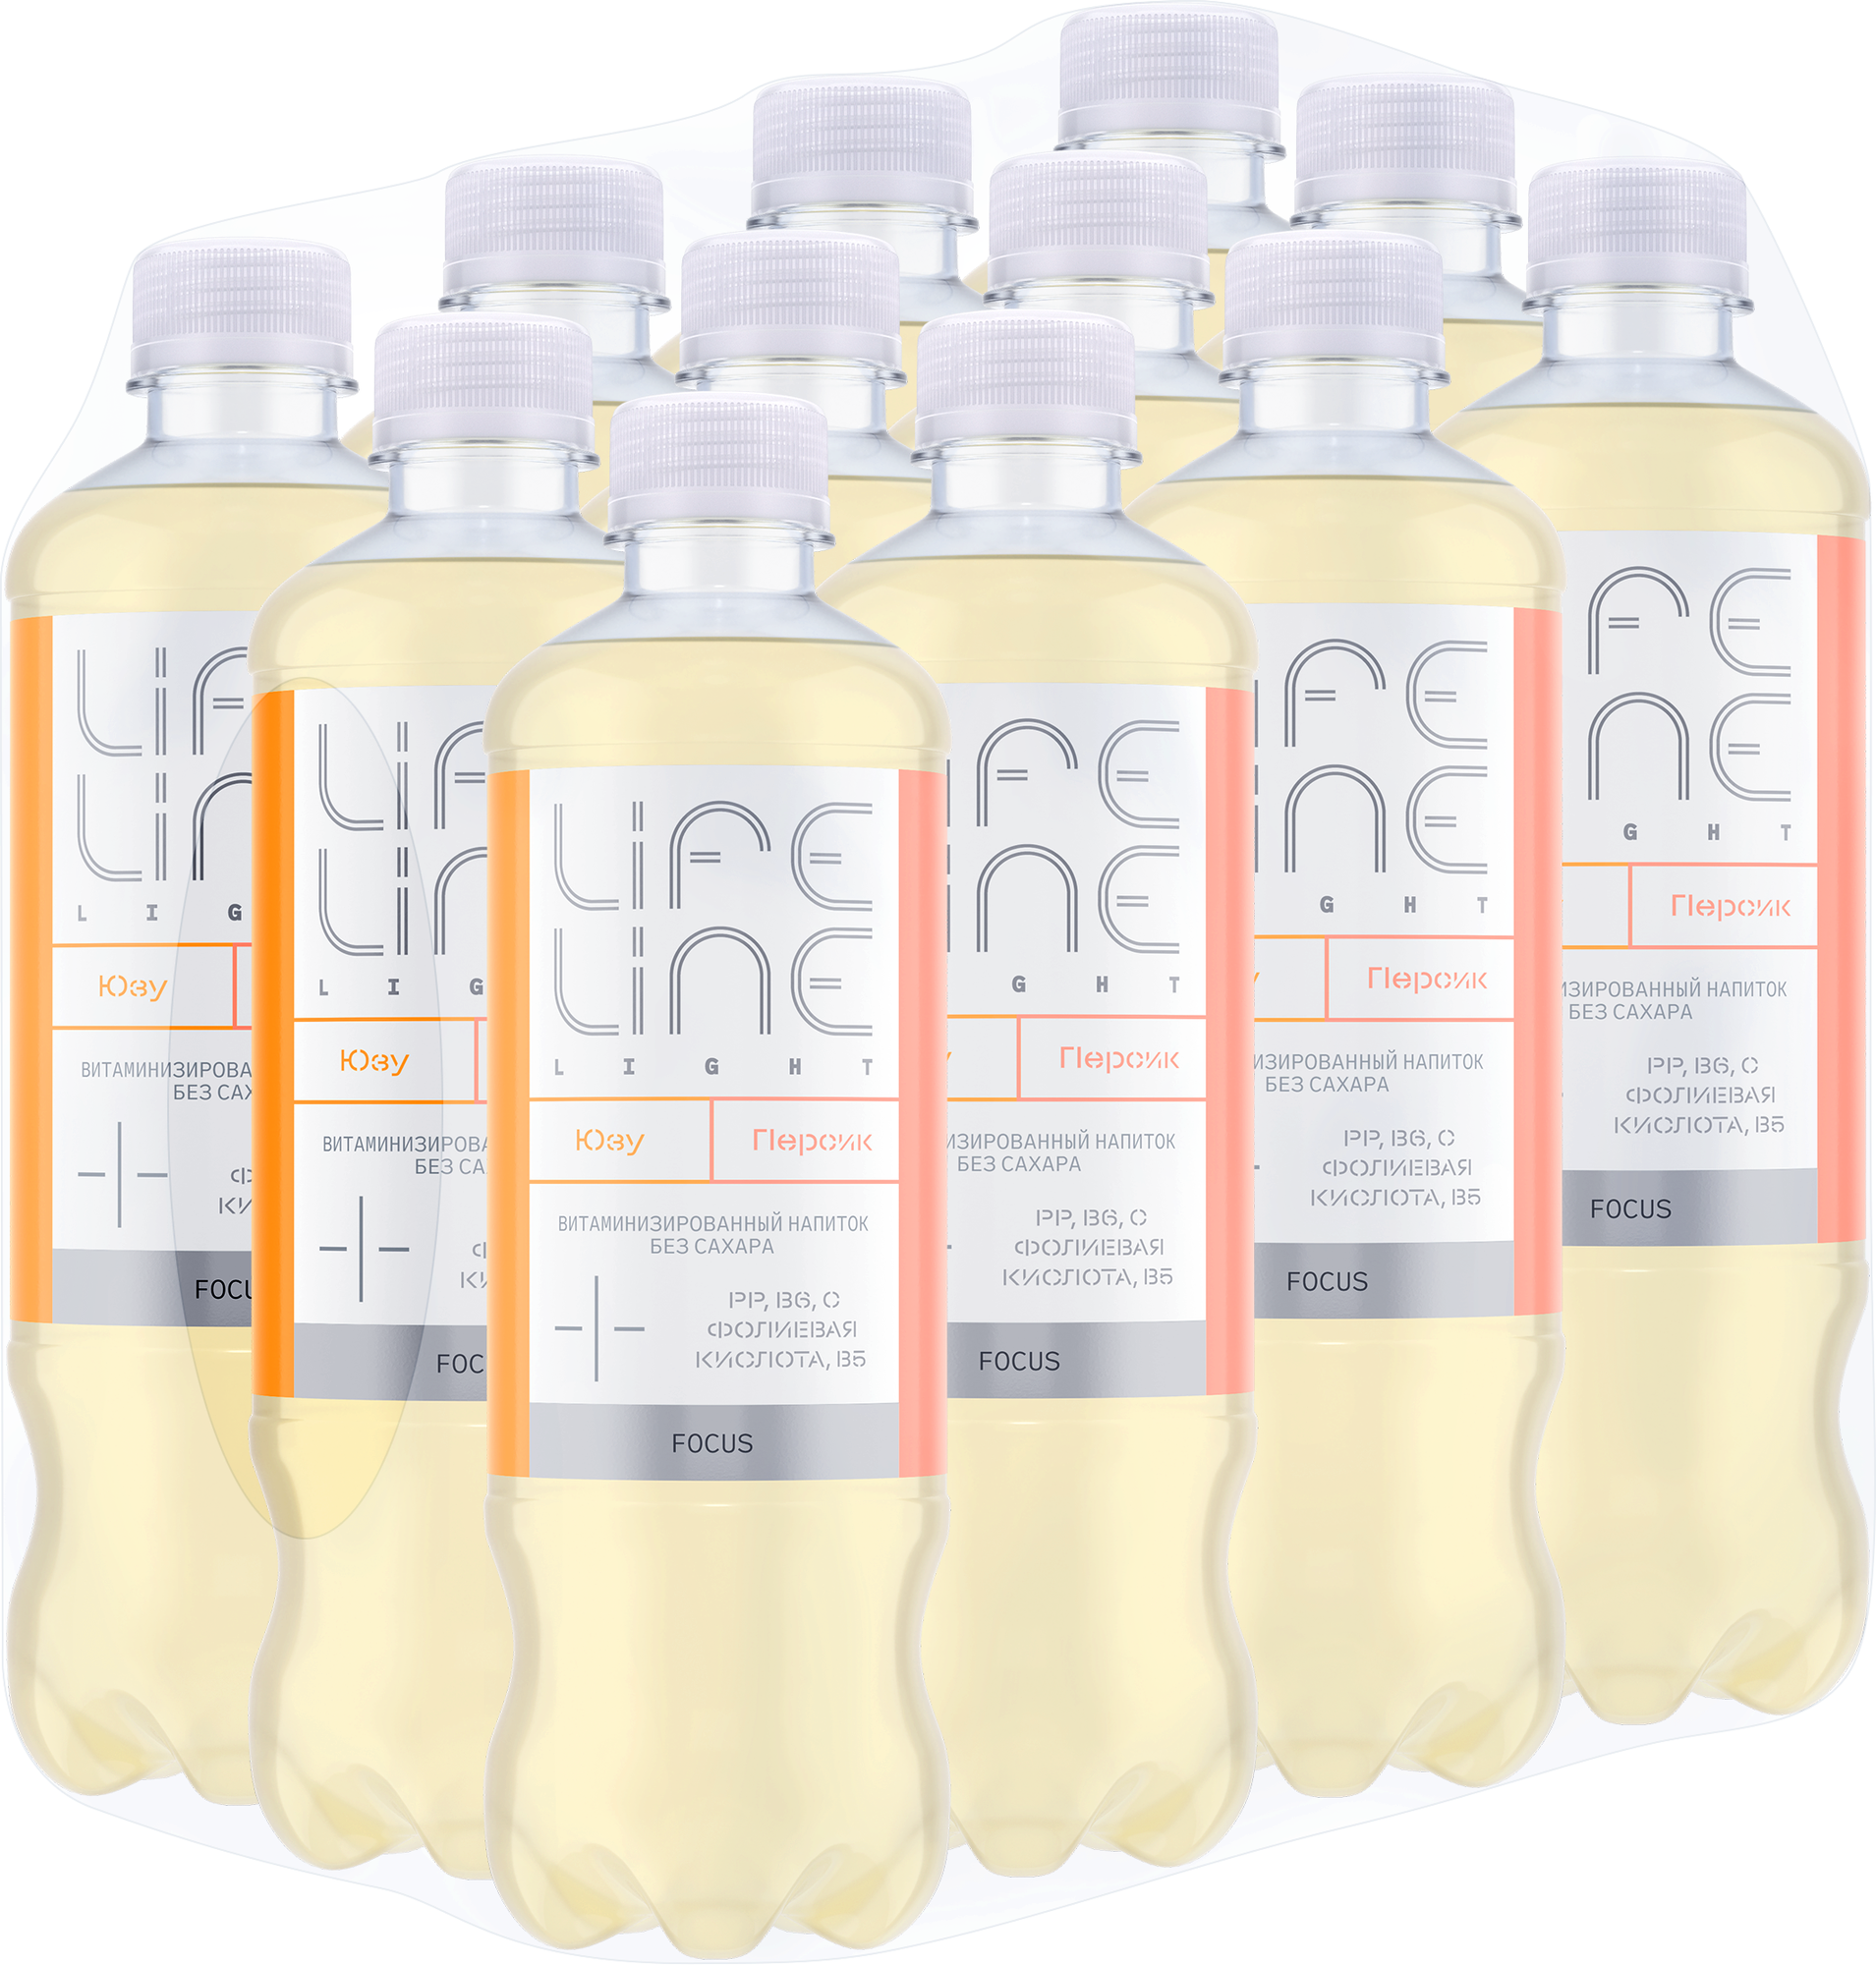 Напиток витаминизированный Lifeline focus персик юзу негазированный, пластик, персик, 12 шт. по 0.5 л